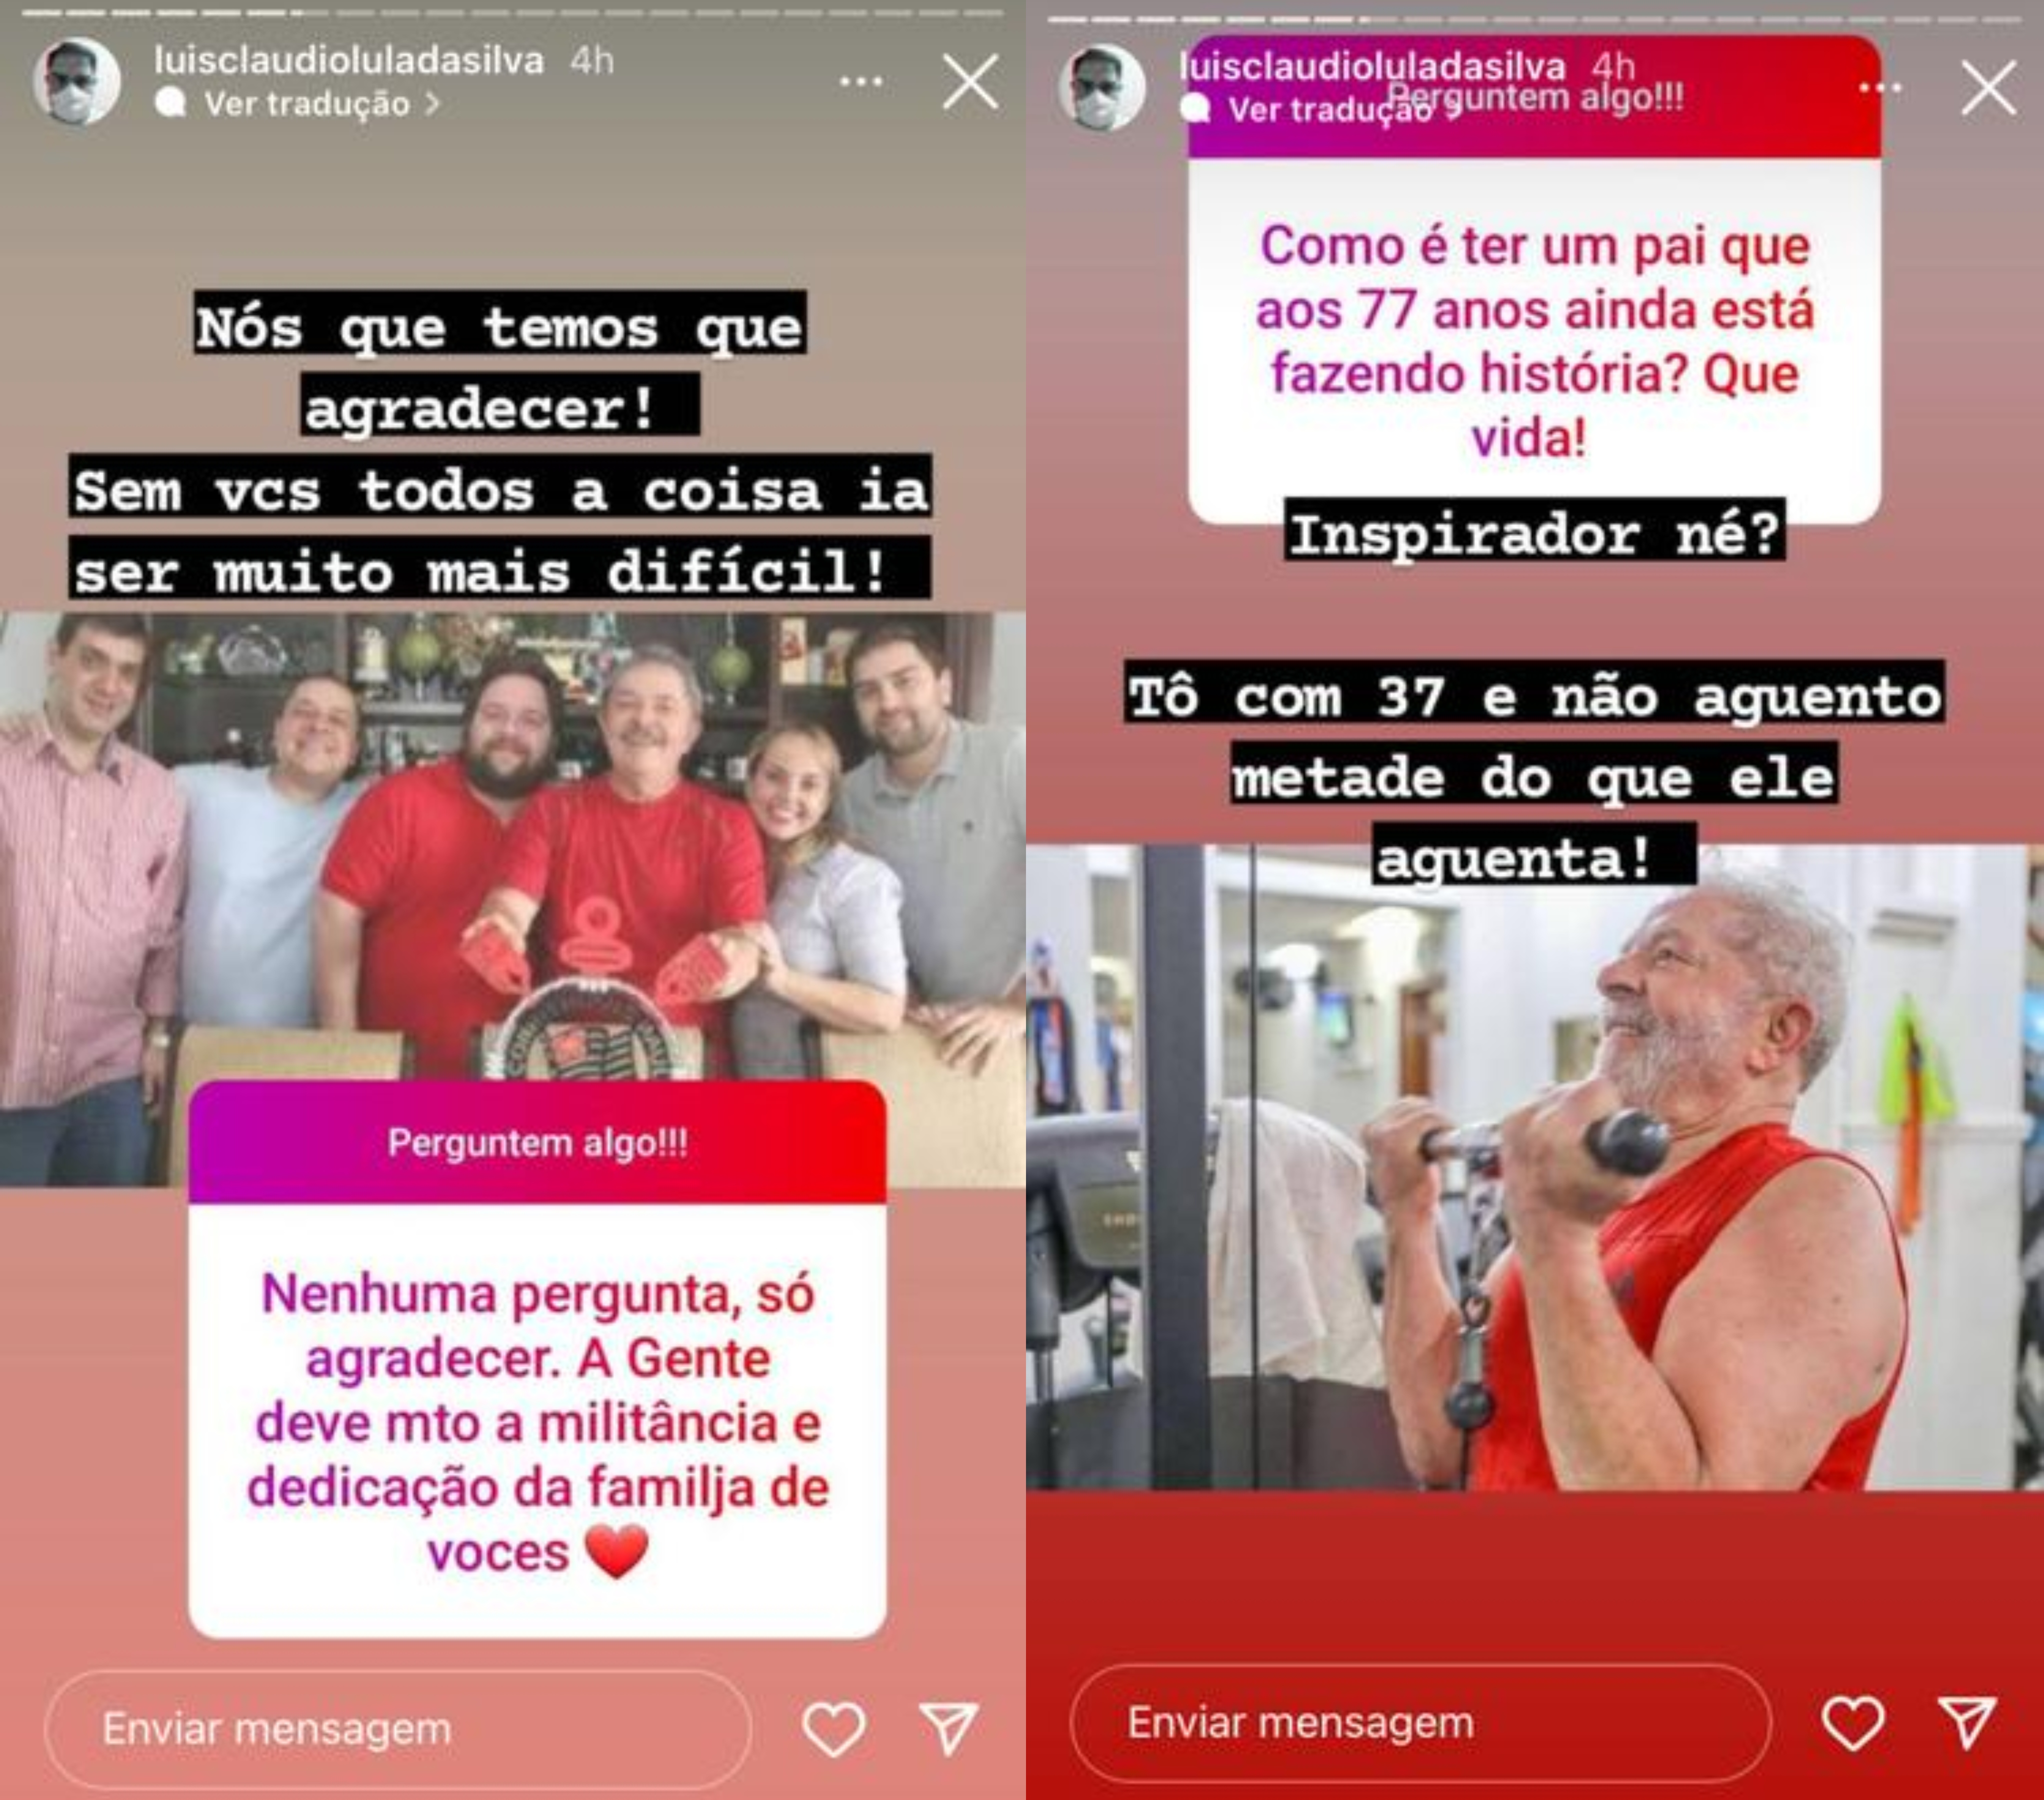 Dois Stories do Instagram com uma caixinha de perguntas e uma resposta em cada. No primeiro, o presidente eleito Lula aparece ao lado dos cinco filhos; na segunda, o presidente aparece malhando na academia